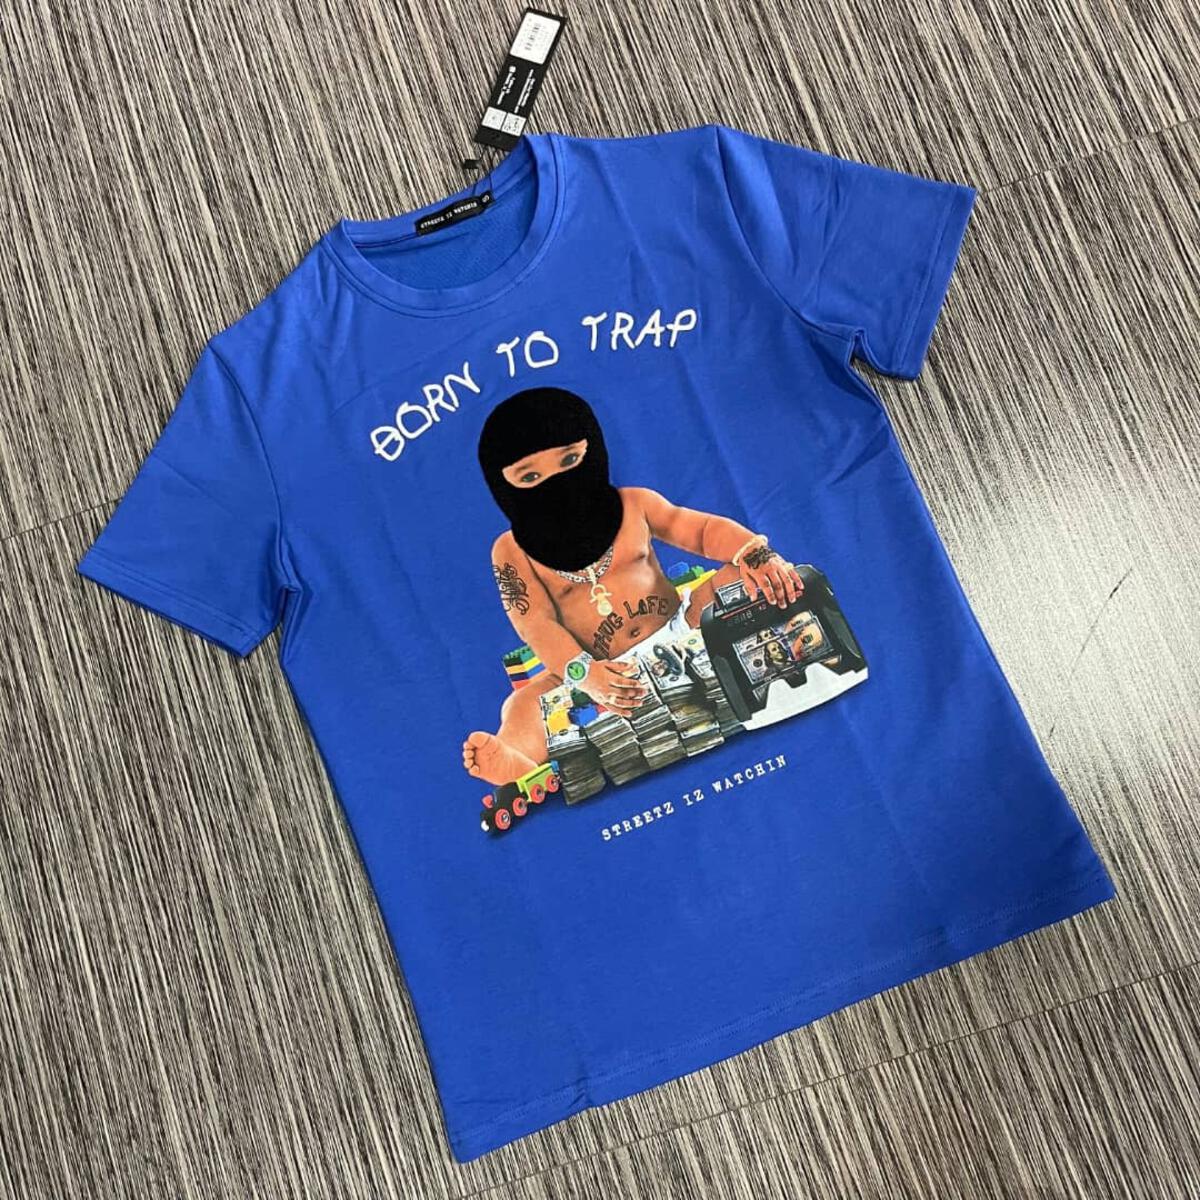 2 VIP T-Shirt Wear - – Iz Streetz Trap Shop Watchin Baby